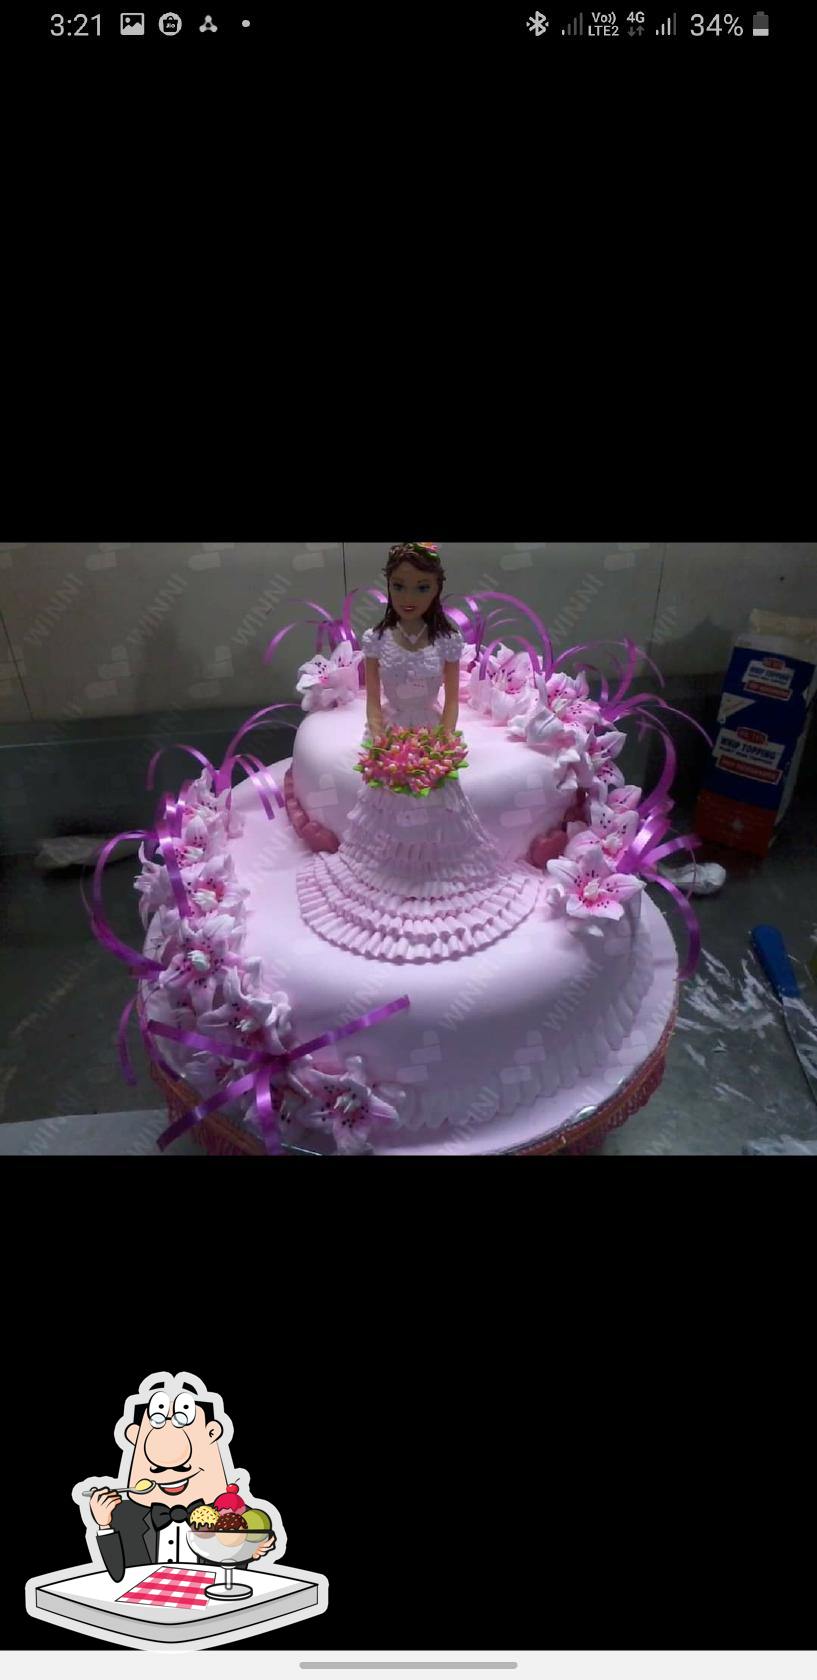 shyam baba's birthday cake ❤️ #shyambababirthday #shyambaba #shyampremi  #shyambabastatus #cakedesign - YouTube